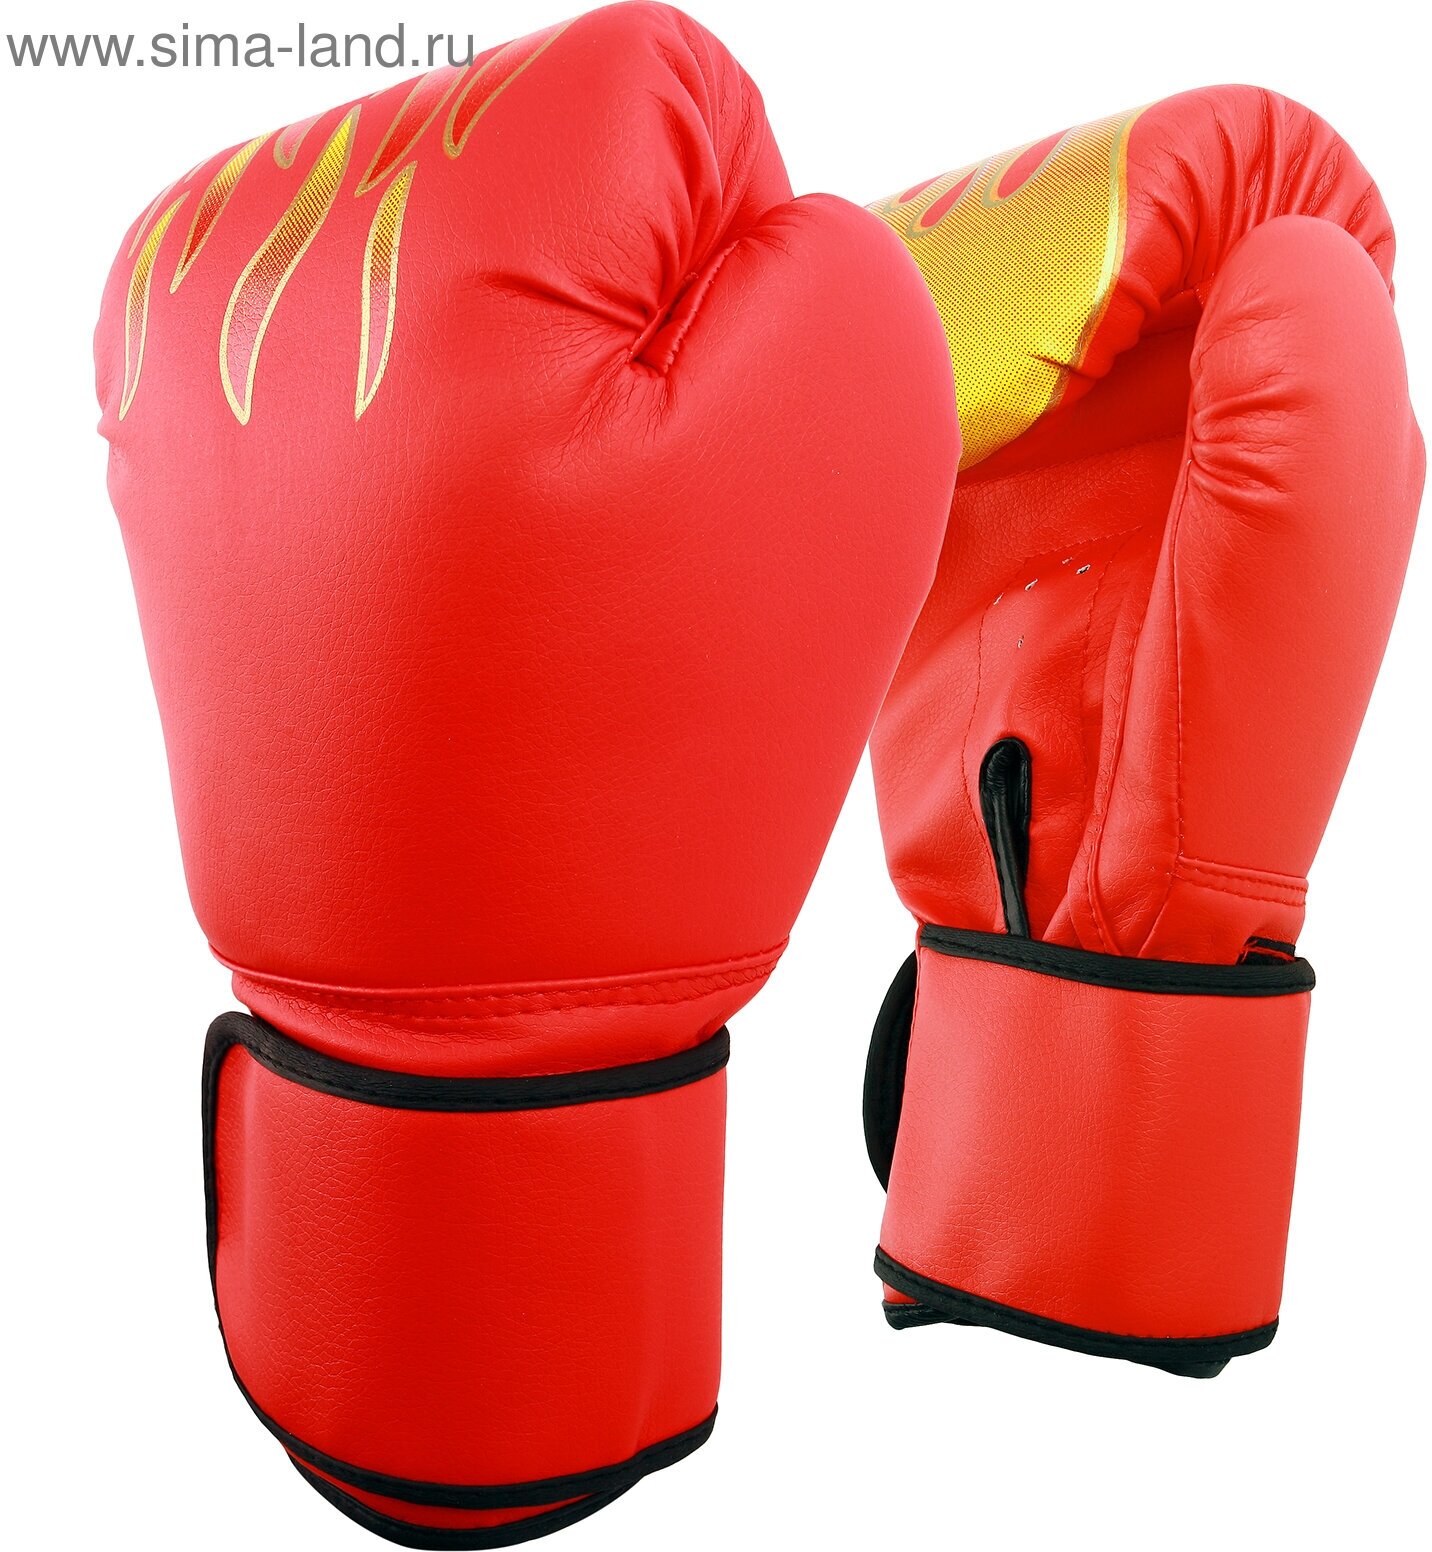 Перчатки боксёрские, 12 унций, цвет красный (1шт.)